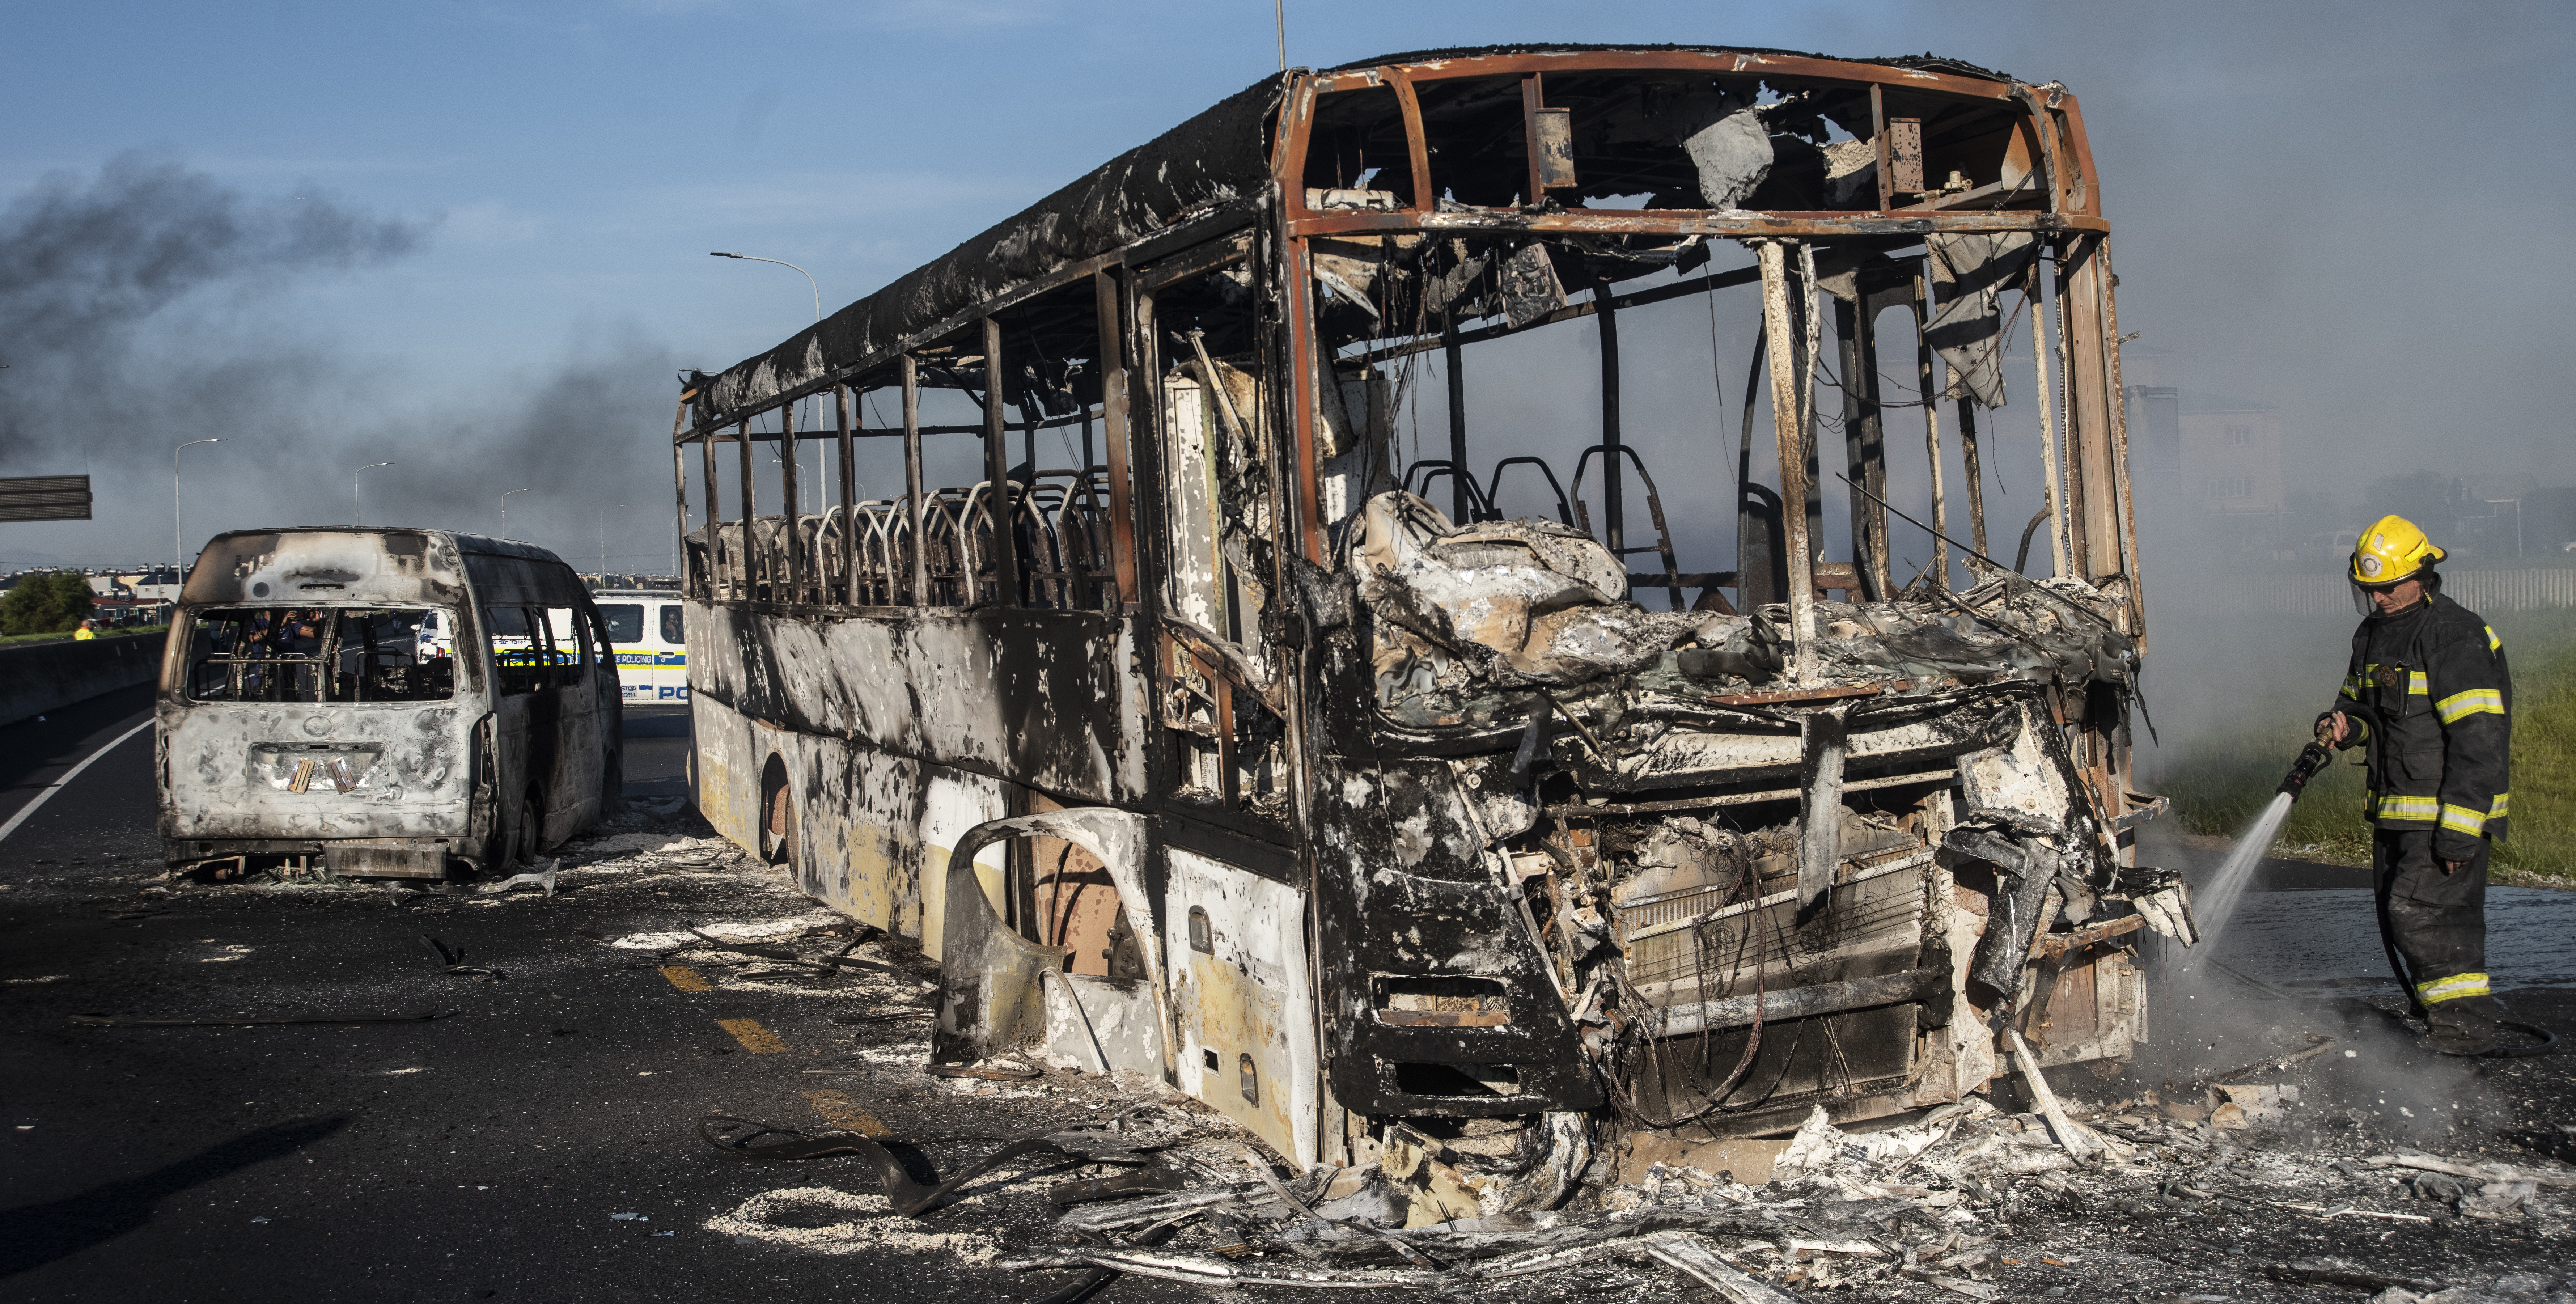 Cape Town taxi strike bus